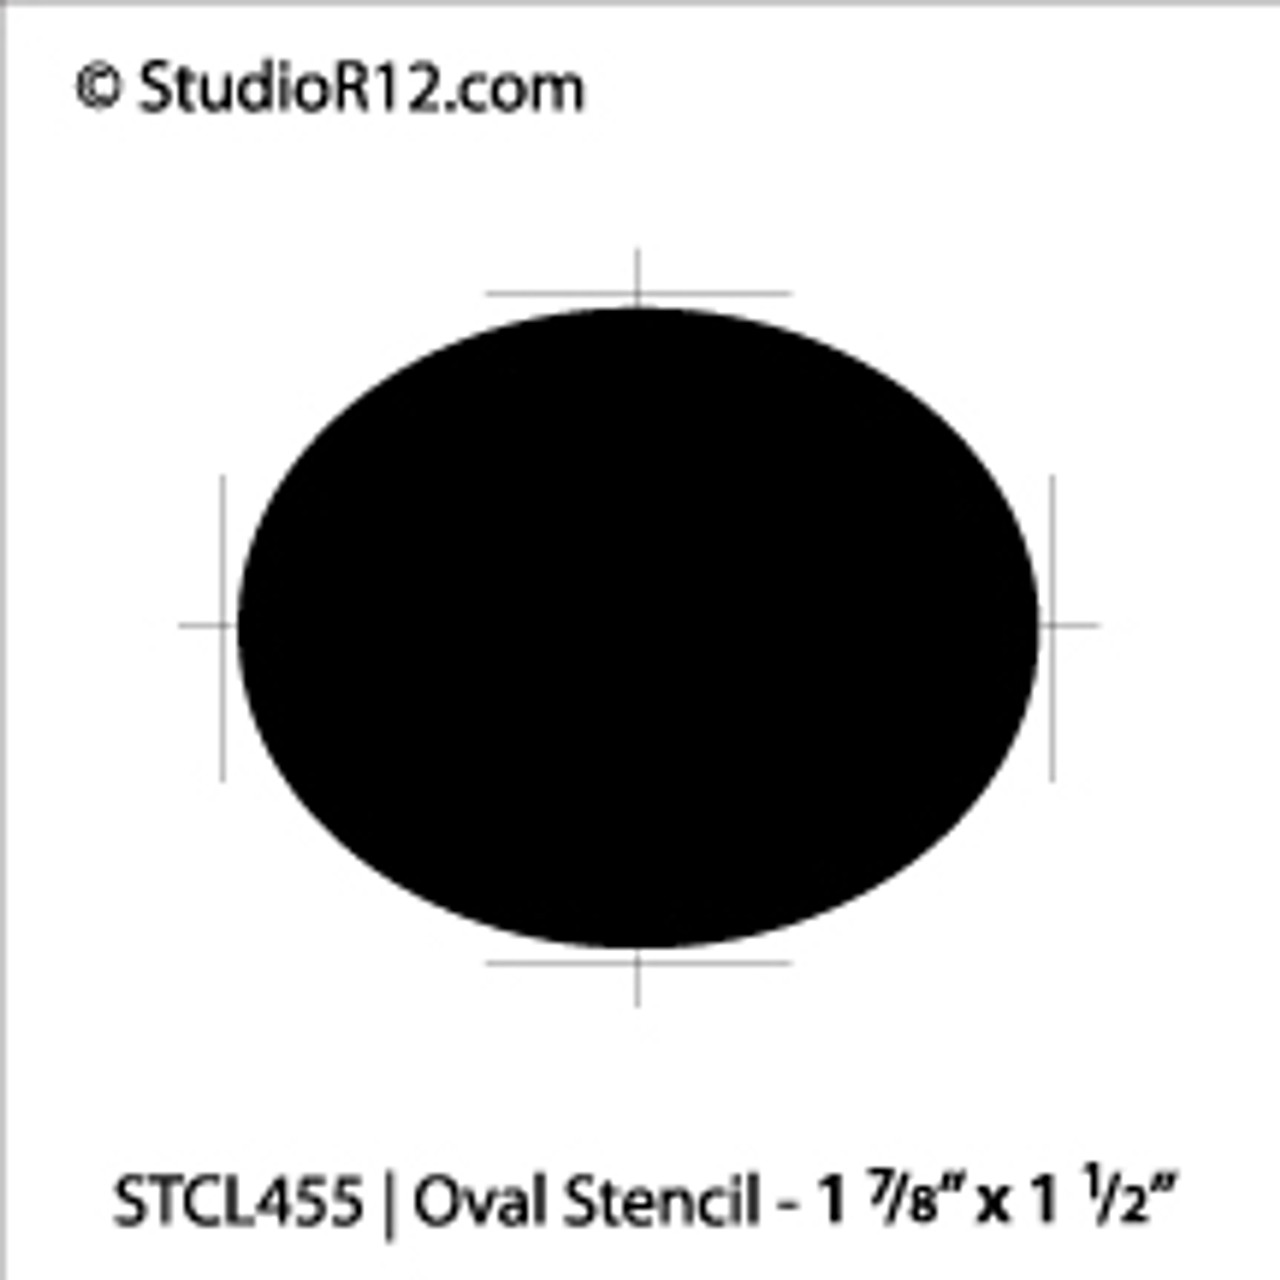 Oval Stencil - 1 7/8" x 1 1/2"